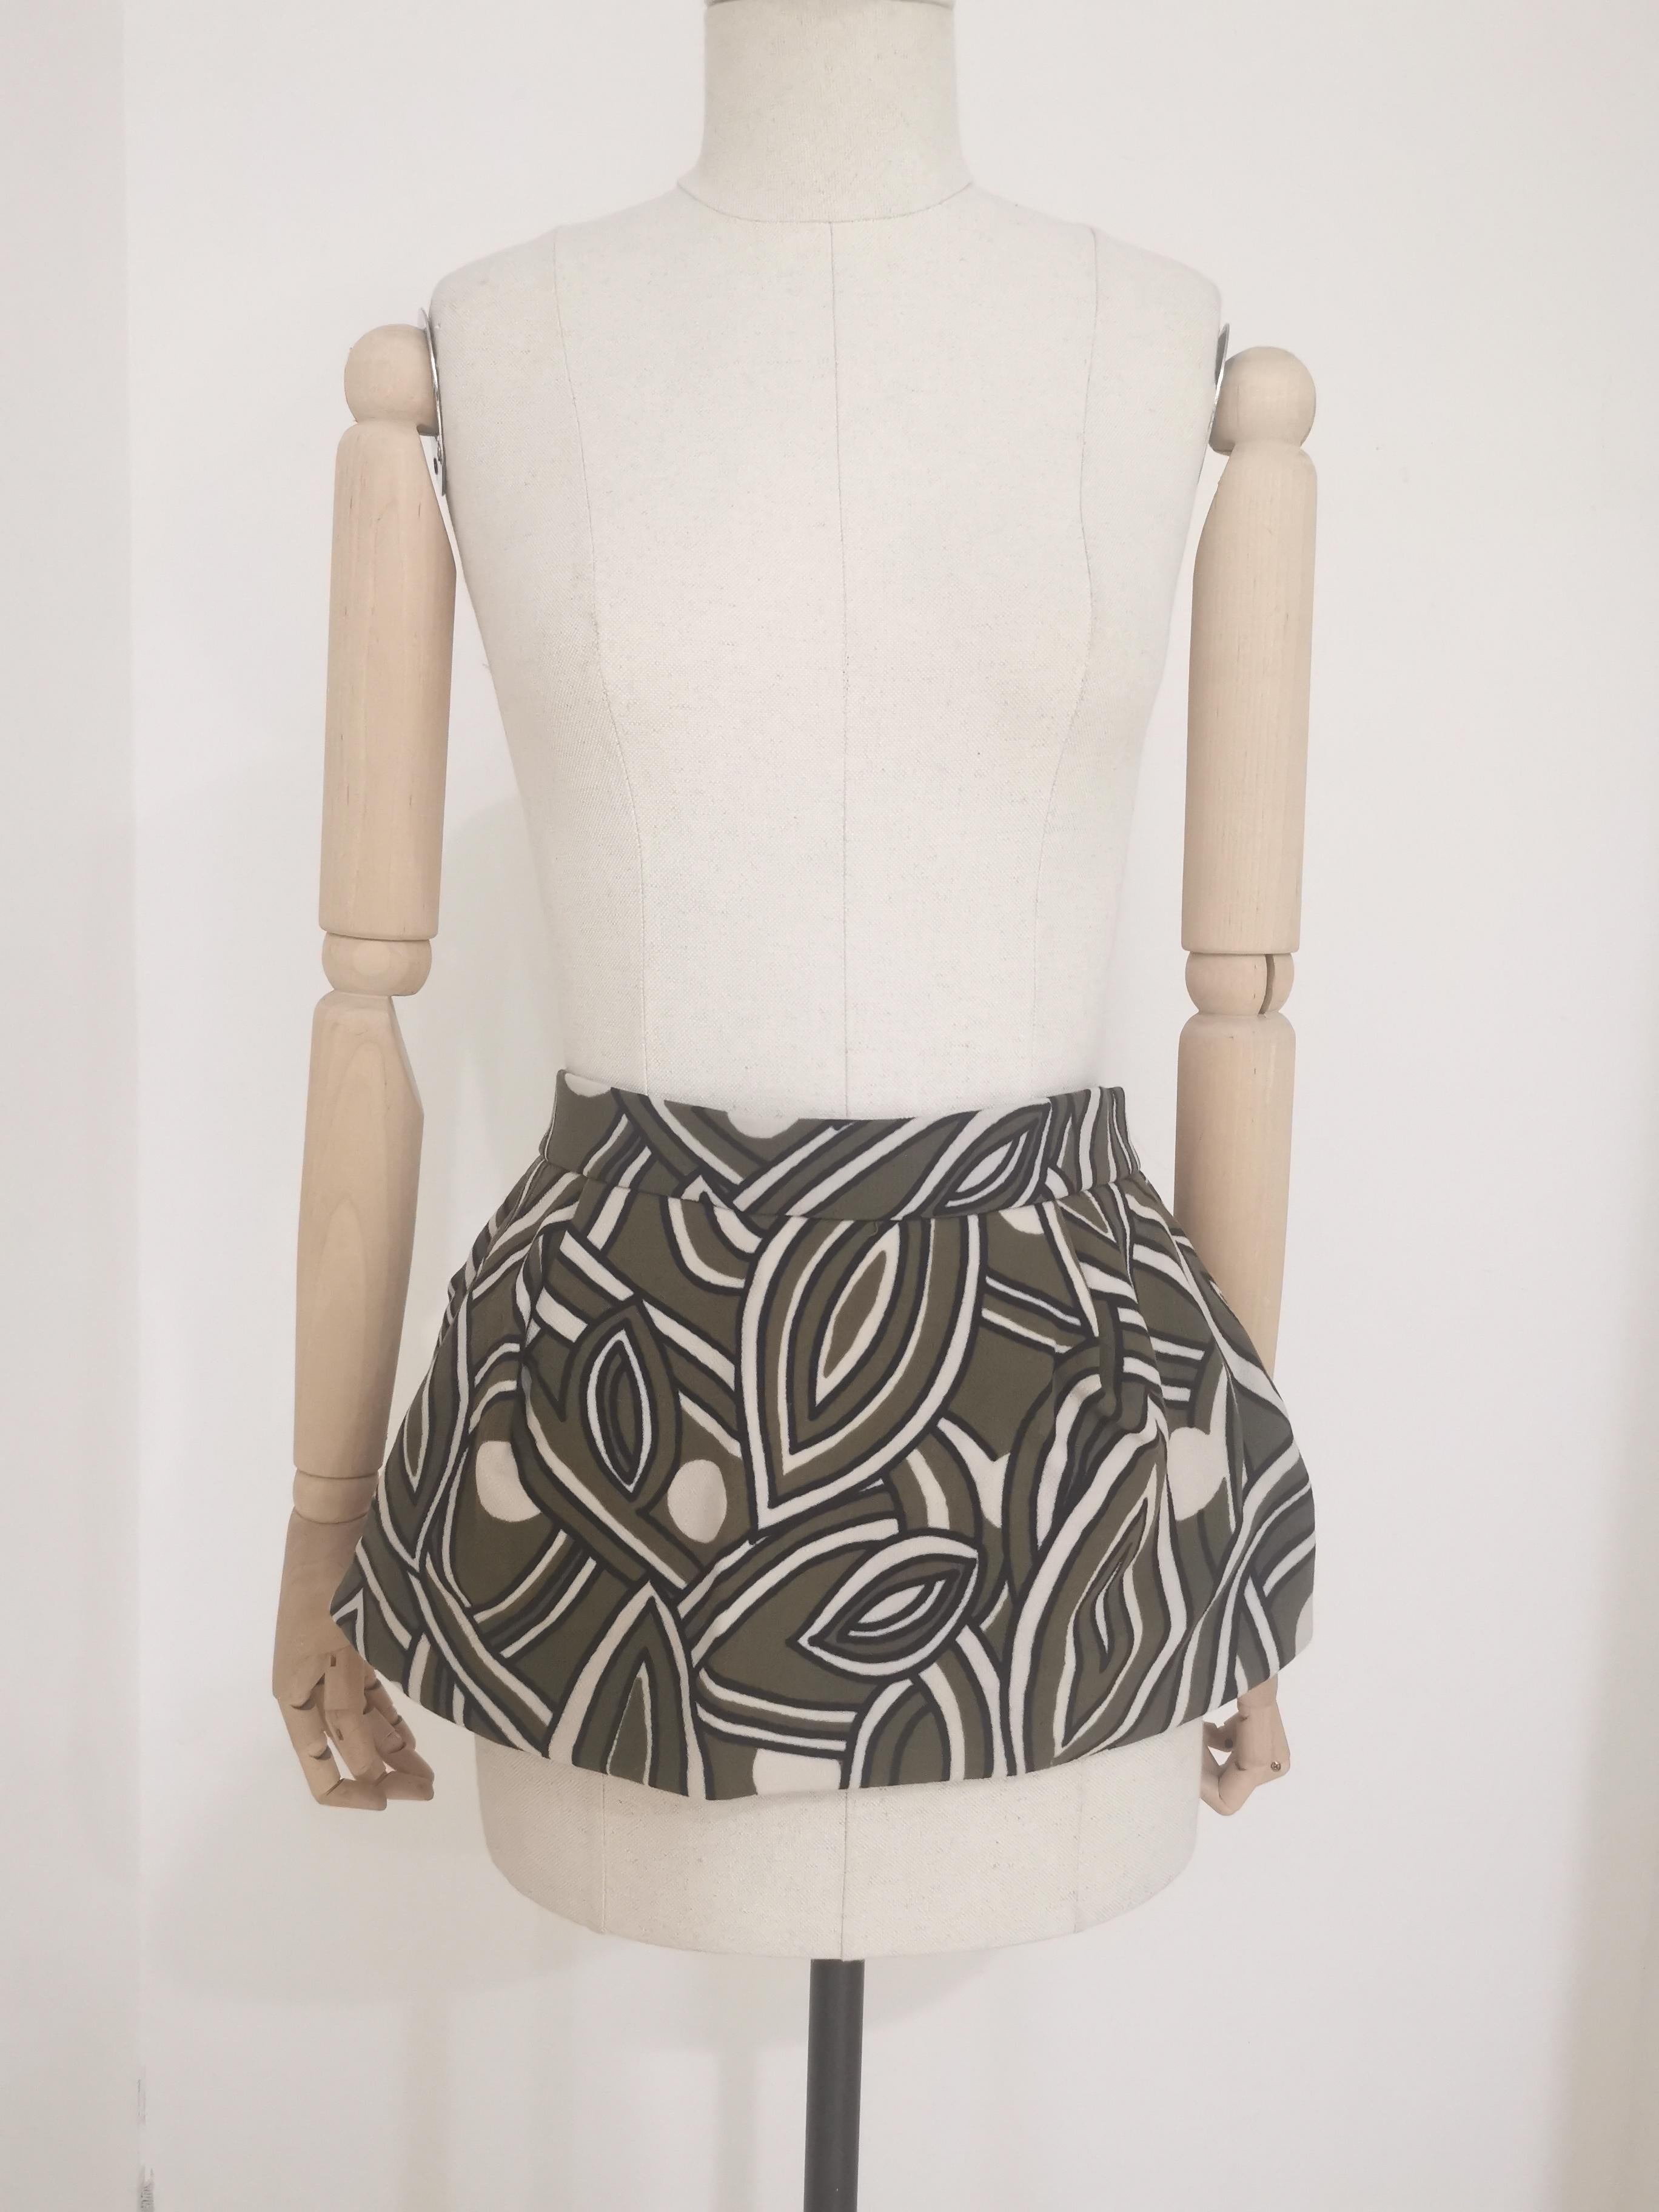 Marni multicoloured mini skirt In Excellent Condition For Sale In Capri, IT